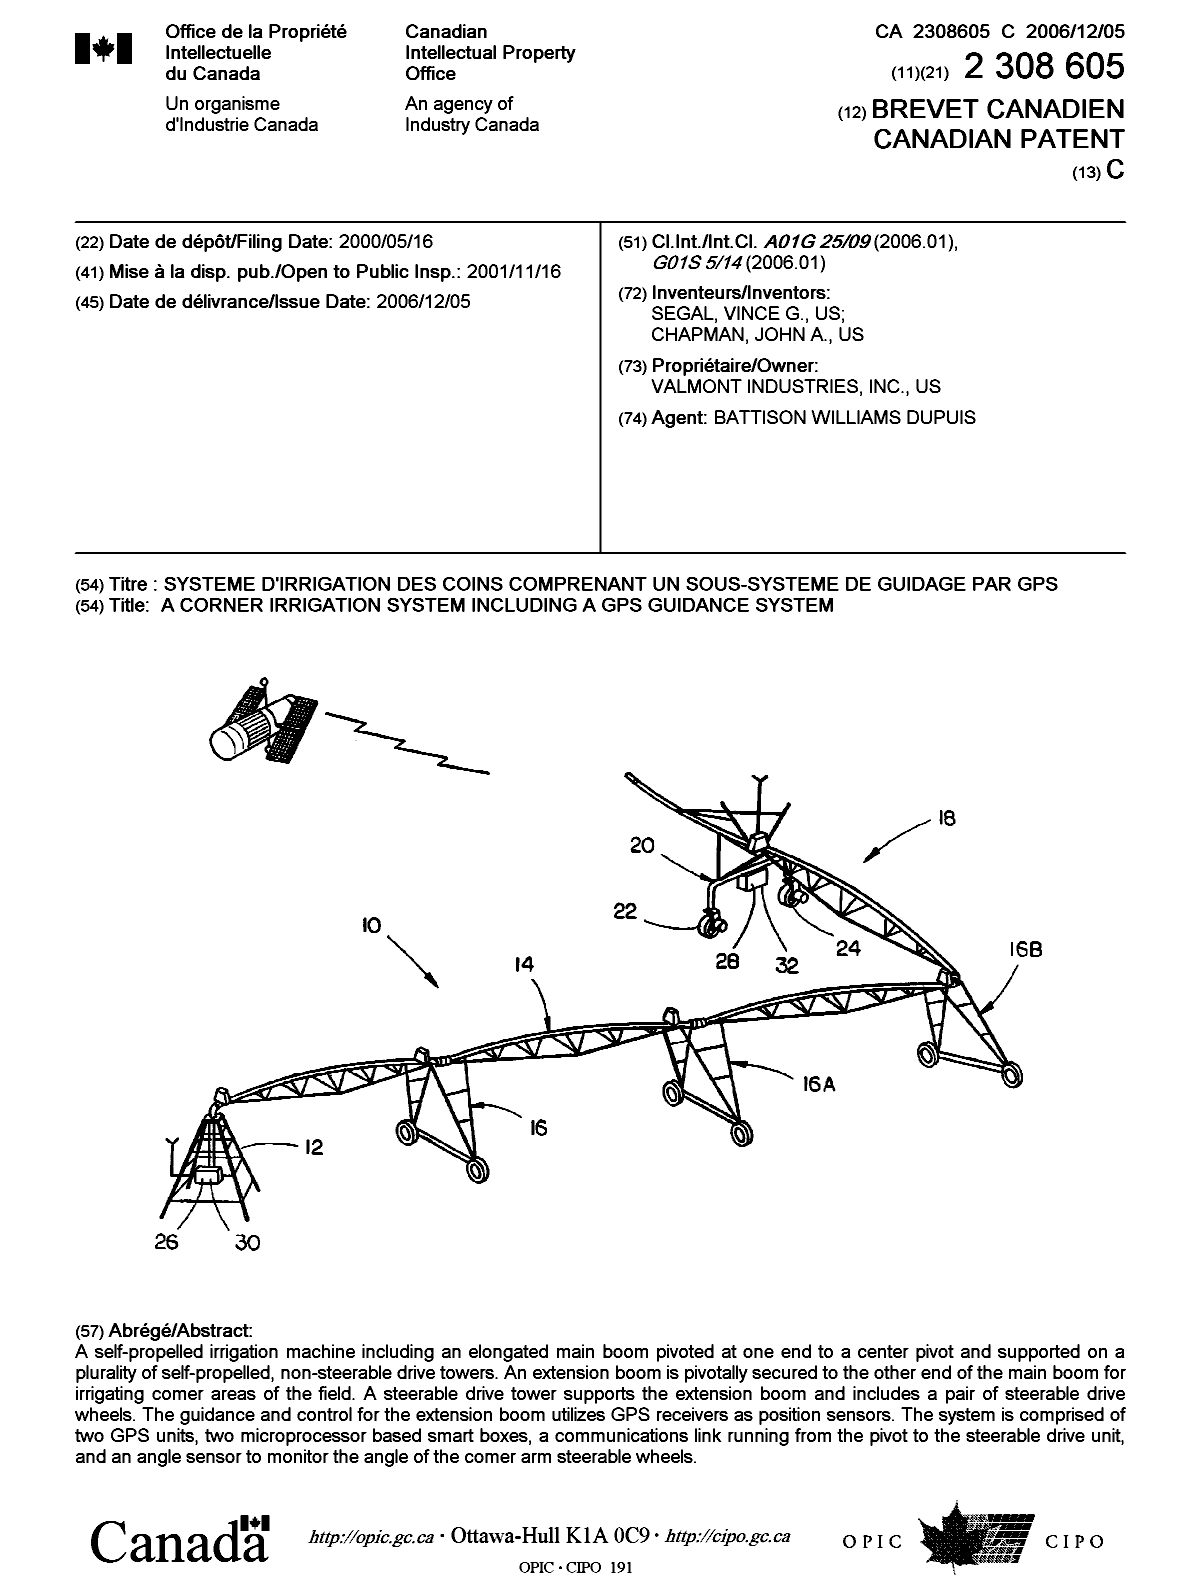 Document de brevet canadien 2308605. Page couverture 20061108. Image 1 de 1